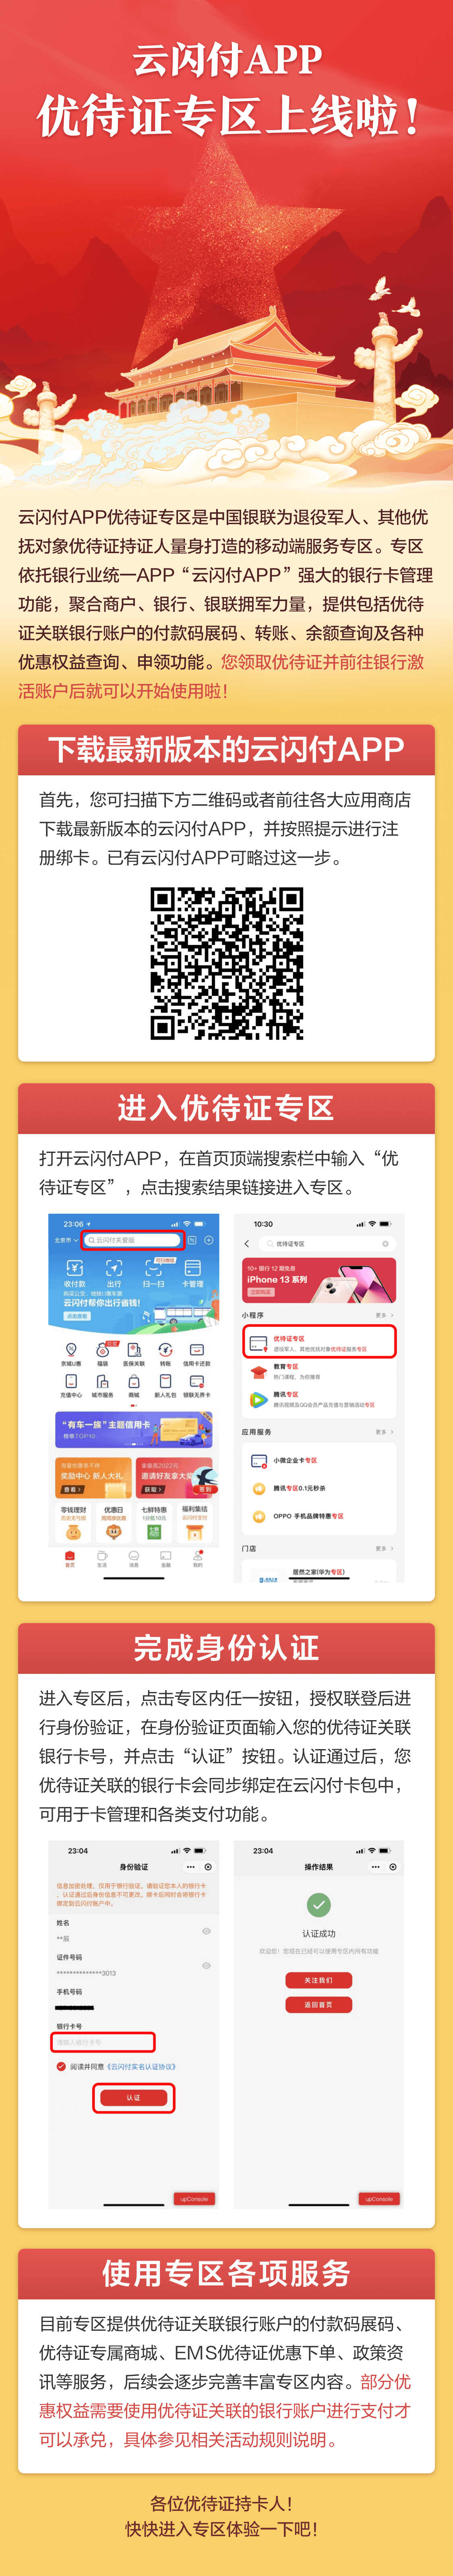 中国银联优惠优先服务海报.png